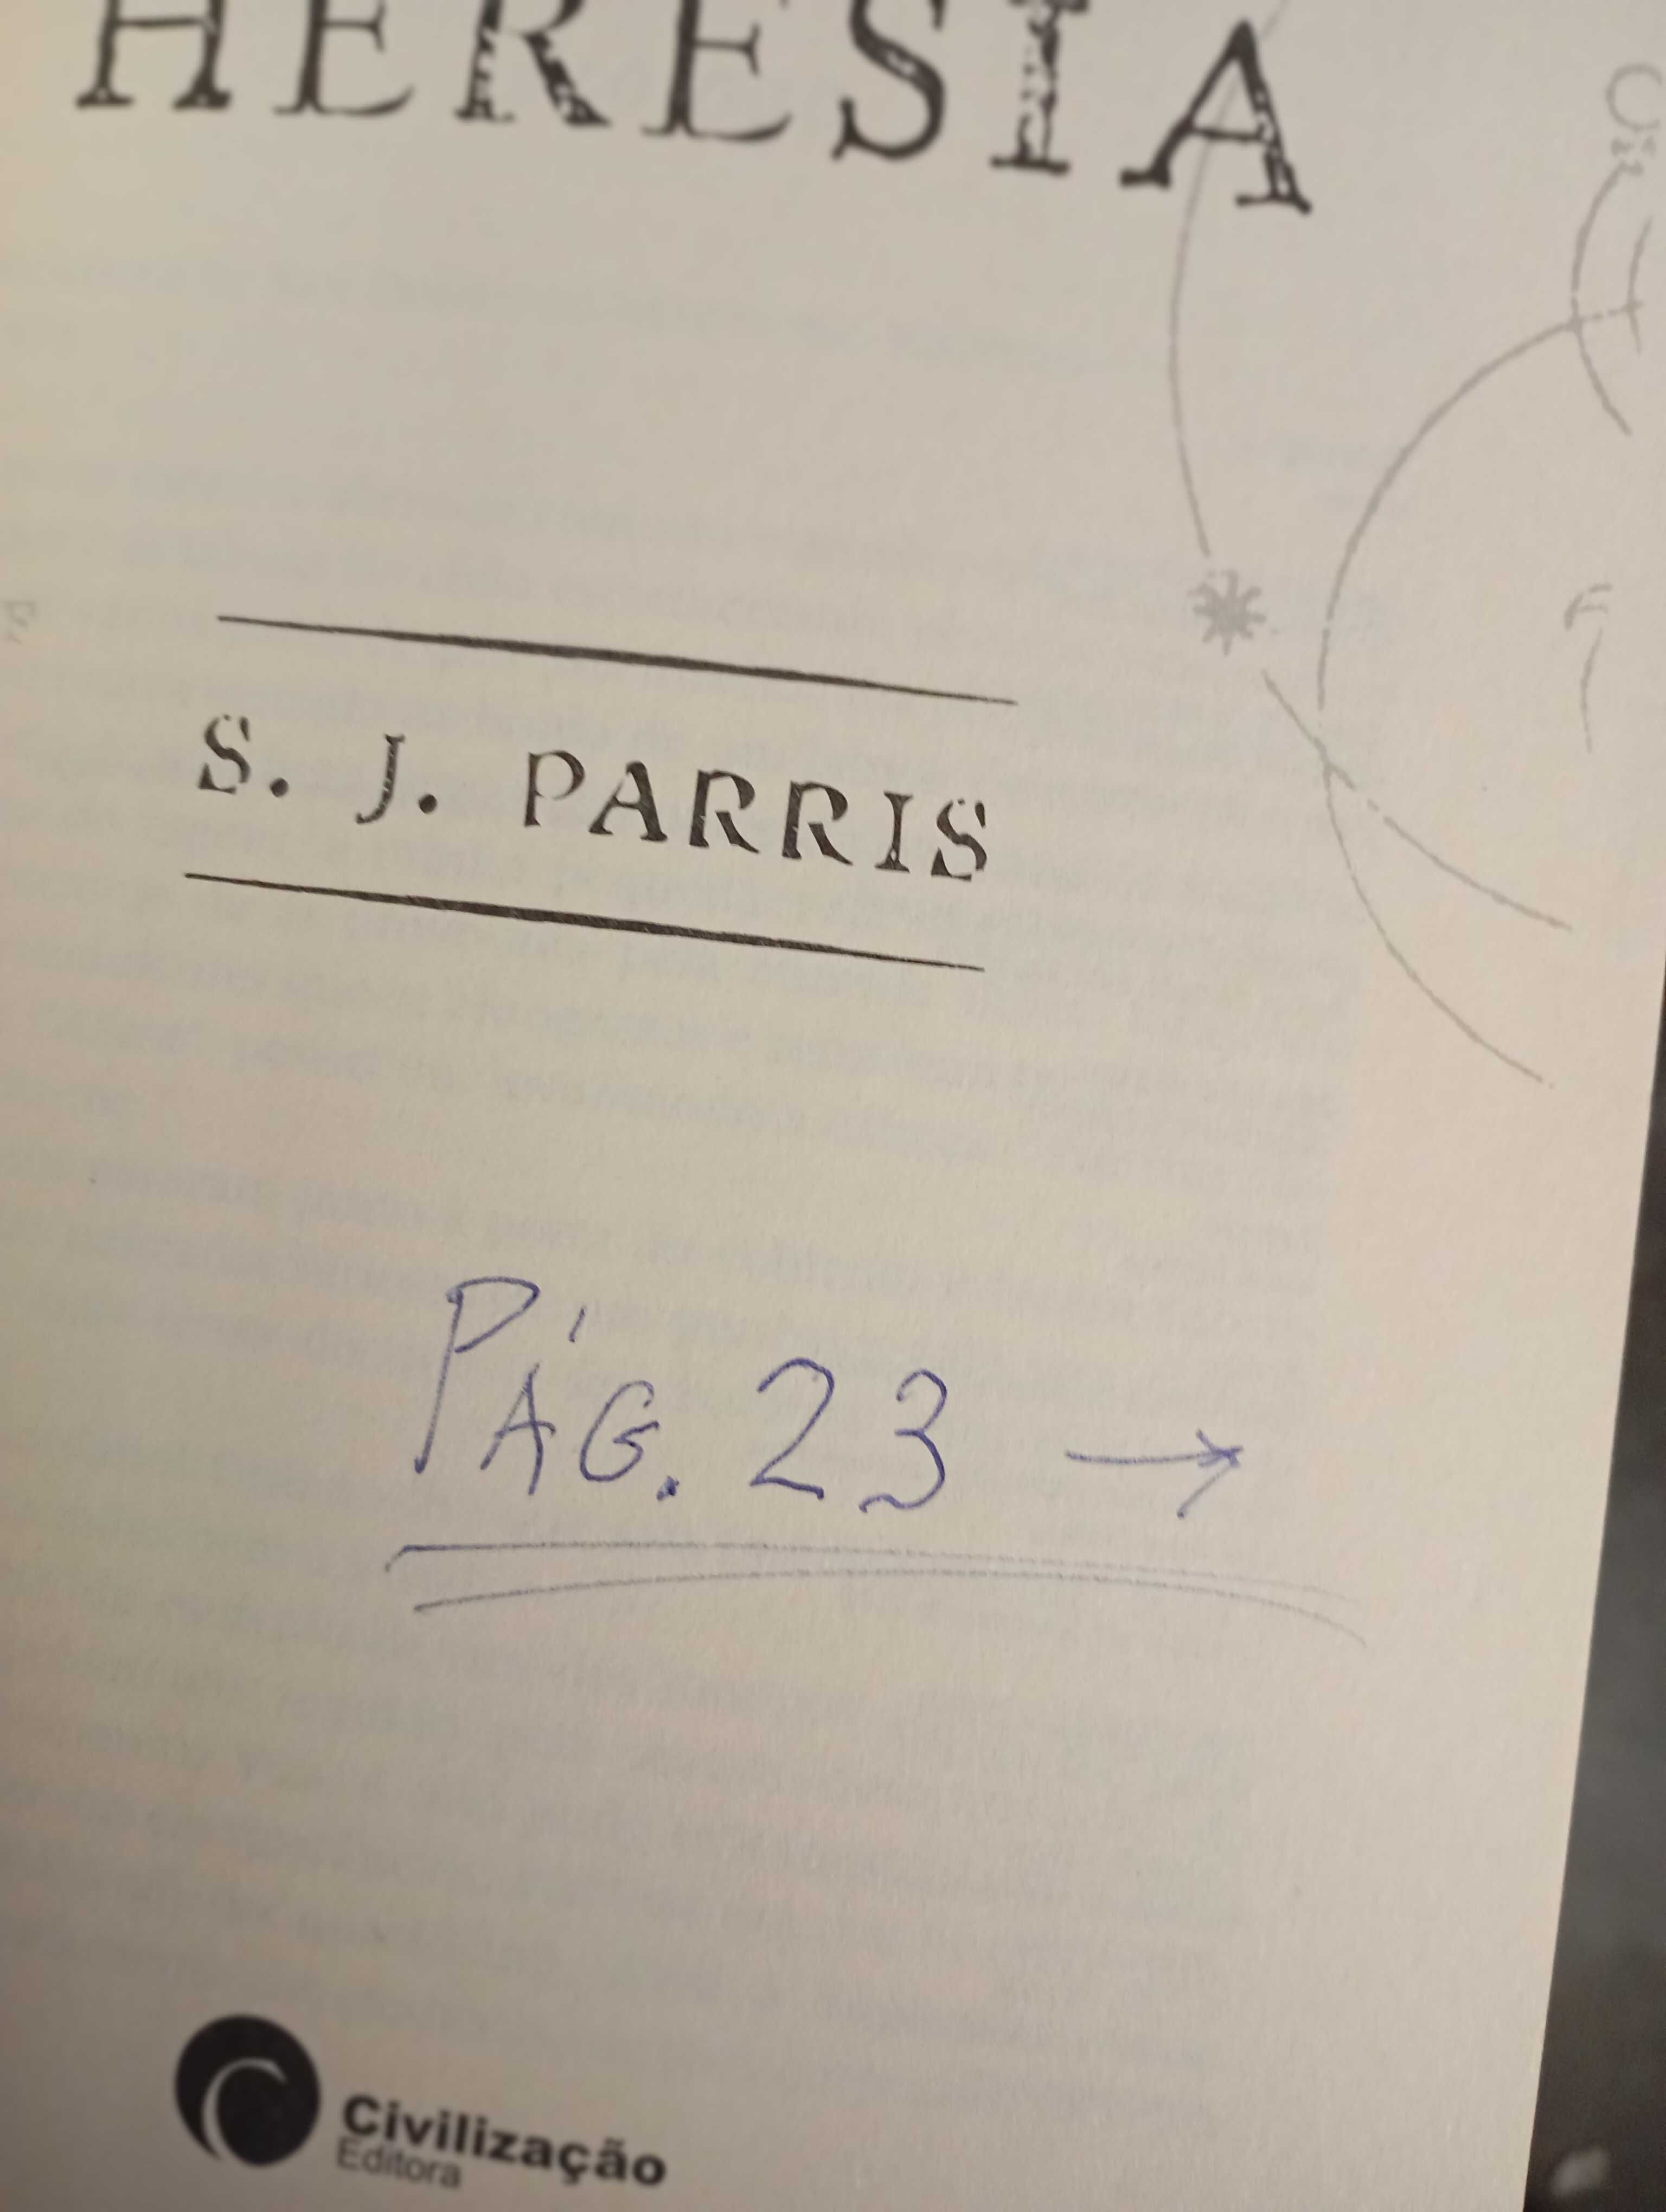 Heresia - S. J. Parris